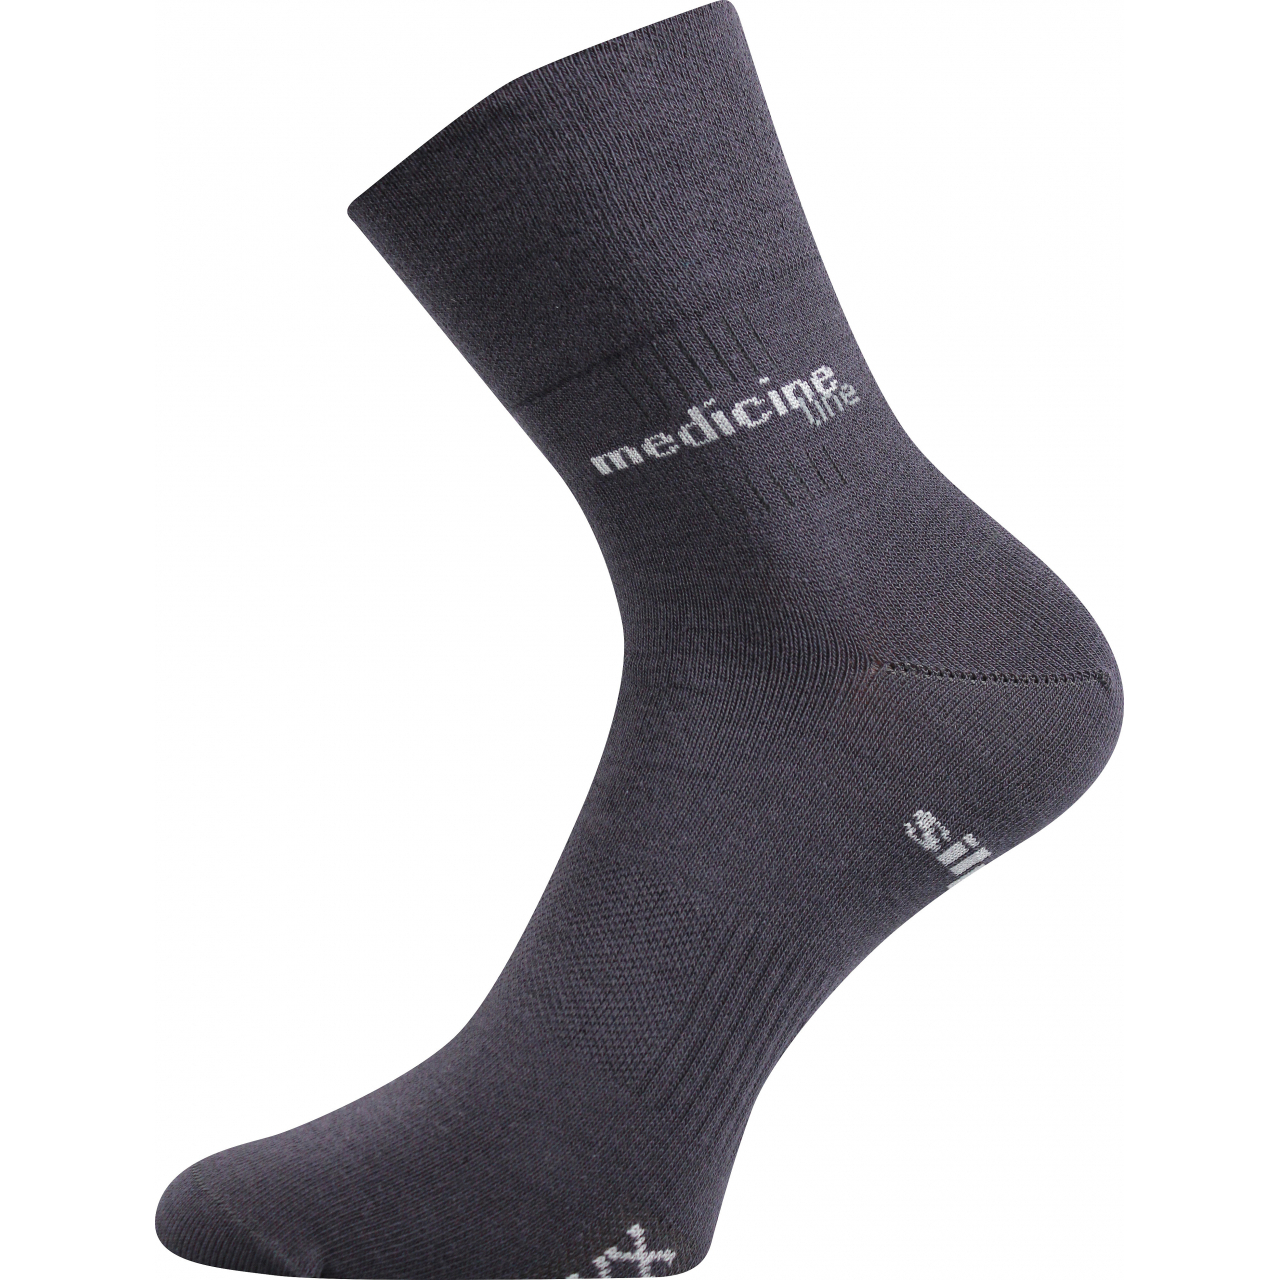 Ponožky zdravotní Mission Medicine - tmavě šedé, 43-46